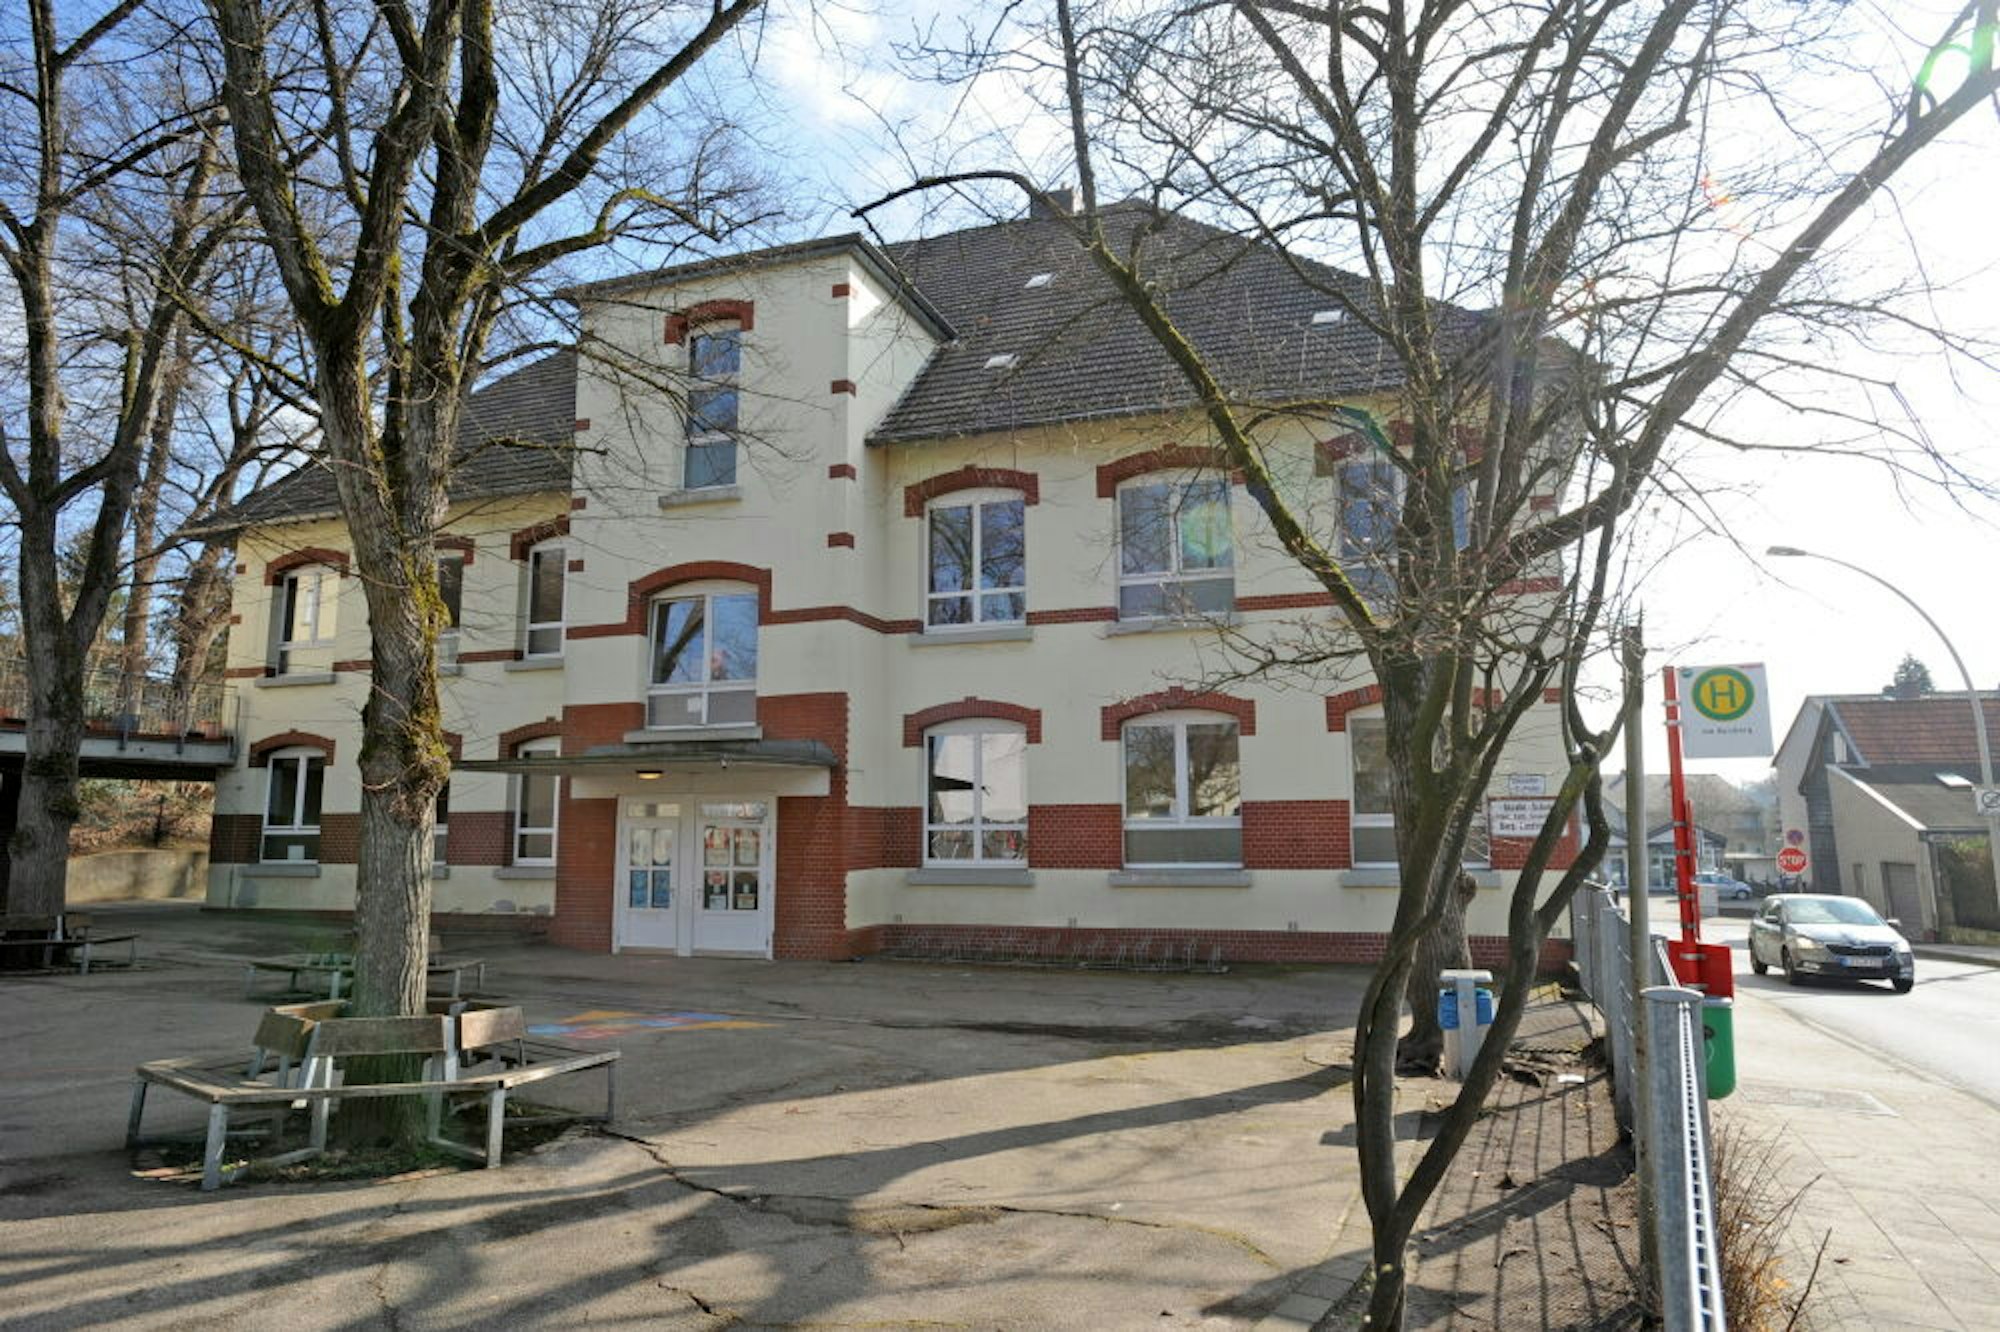 Die katholische Gezelinschule in Schlebusch ist seit Jahren als Sanierungsfall ein Thema.